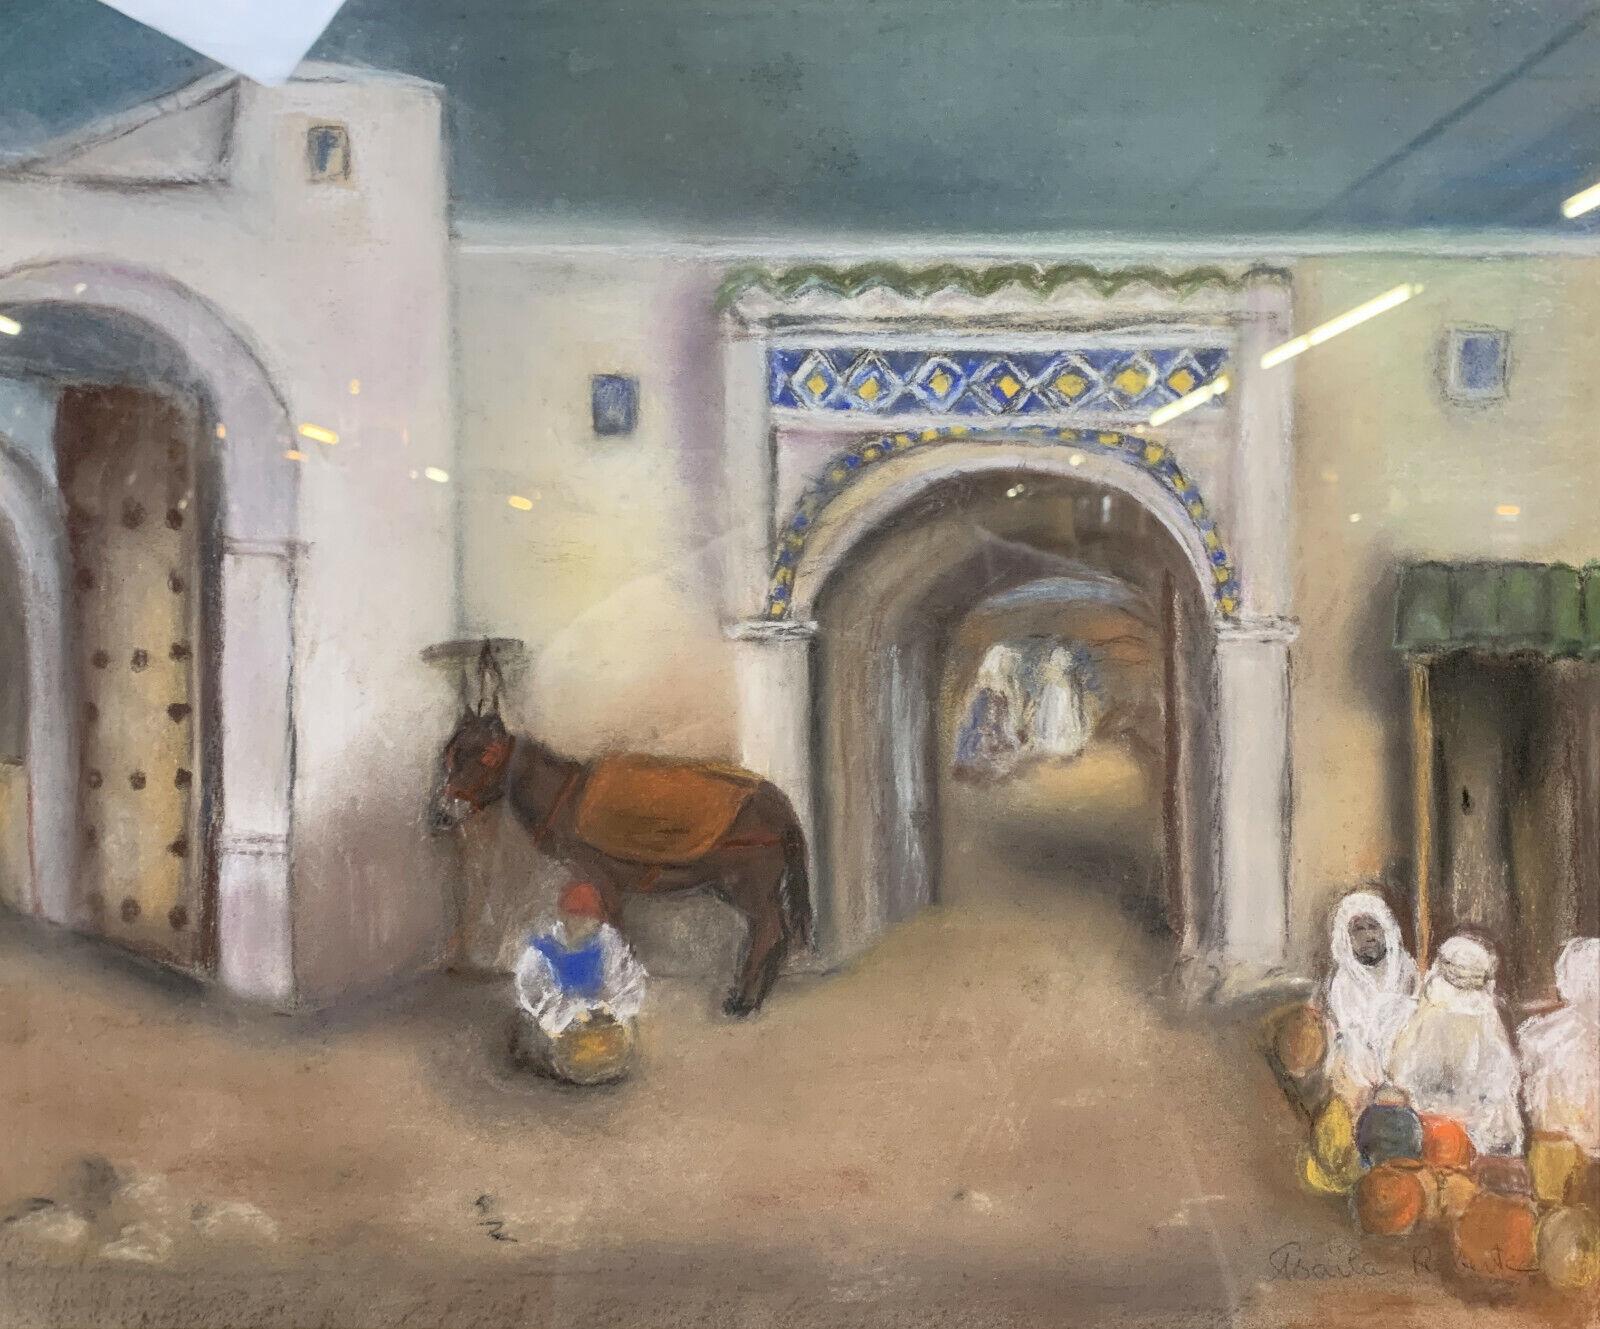 Tauchen Sie mit diesem fesselnden Aquarell, das der orientalistischen Schule des 20. Jahrhunderts zuzuordnen ist, in die pulsierende Atmosphäre einer belebten Medina ein. Dieses von der Künstlerin Roberte signierte Kunstwerk zeigt eine belebte Szene